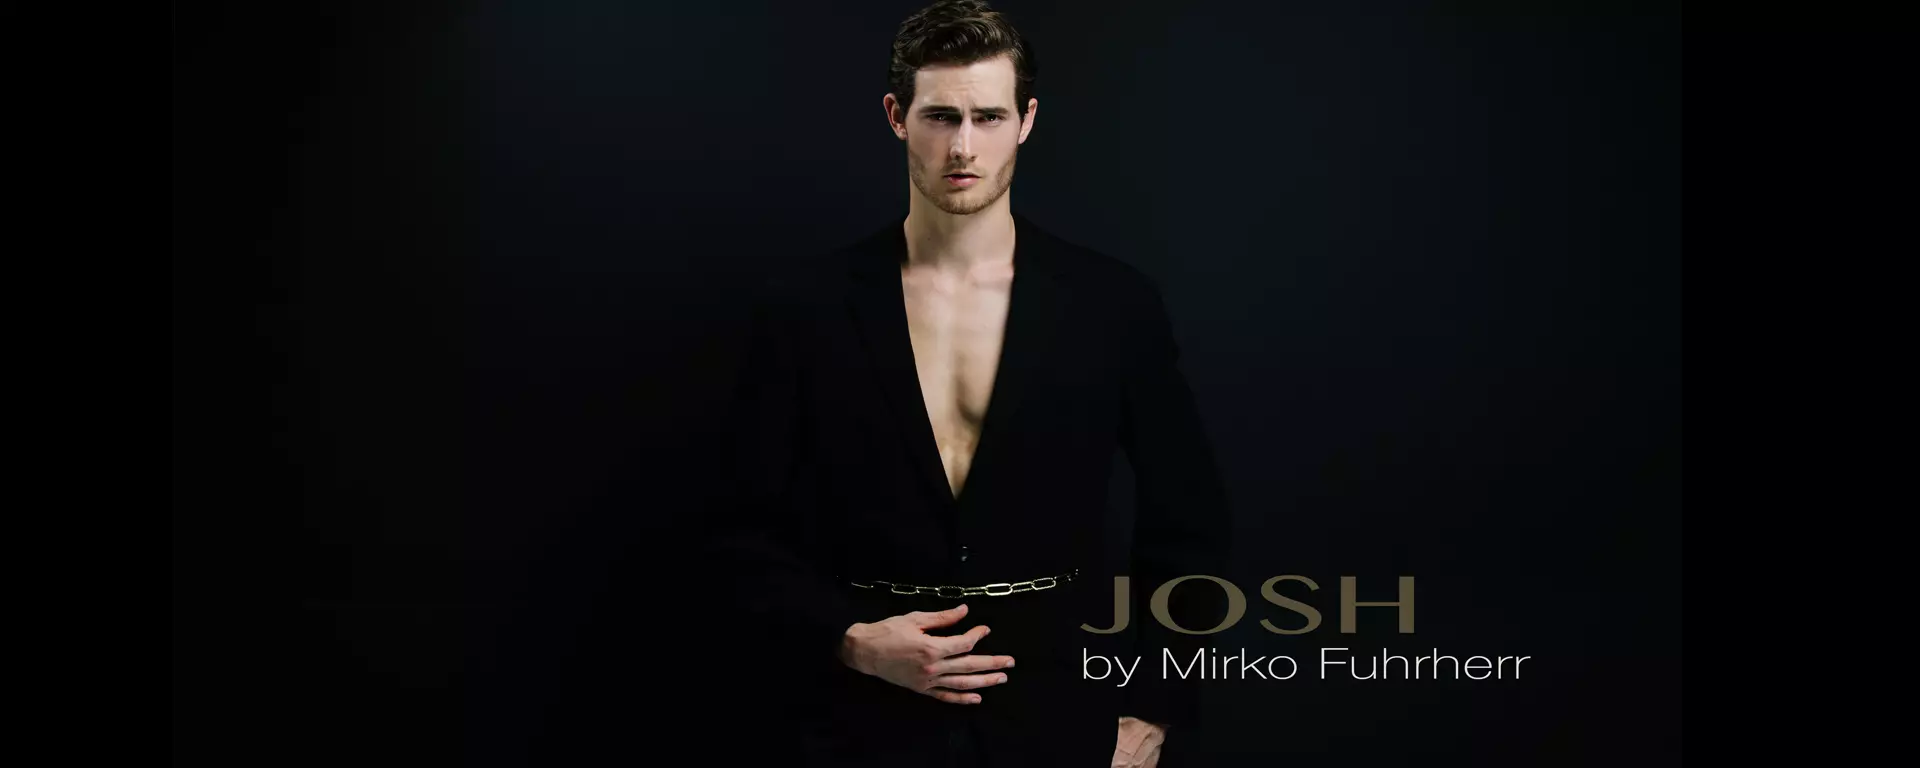 מסונוור מיופיו של ג'וש בתמונות מאת Mirko Fuhrherr - בלעדי